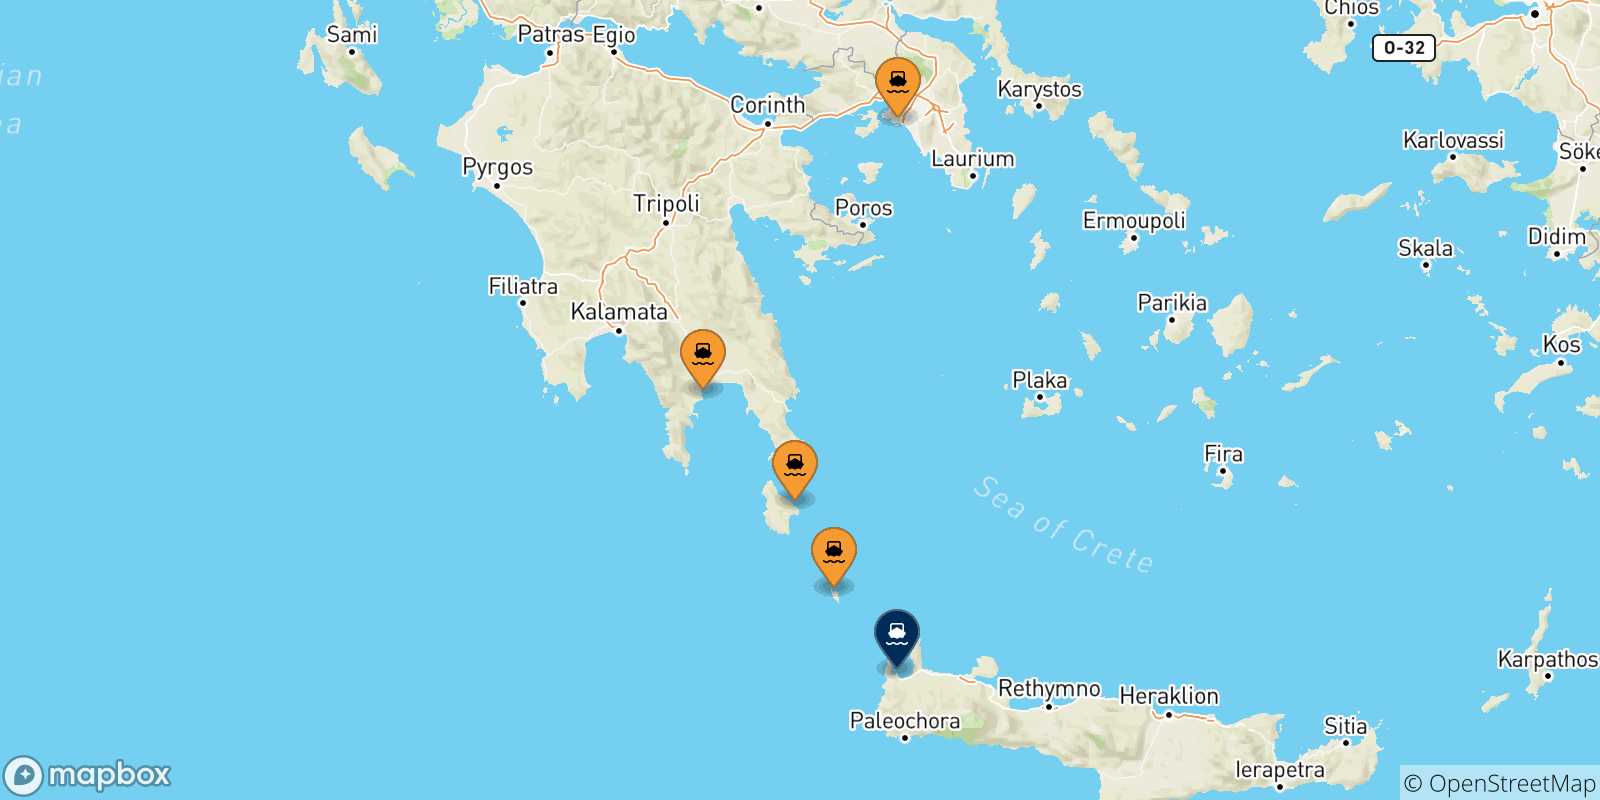 Mappa delle possibili rotte tra la Grecia e Kissamos